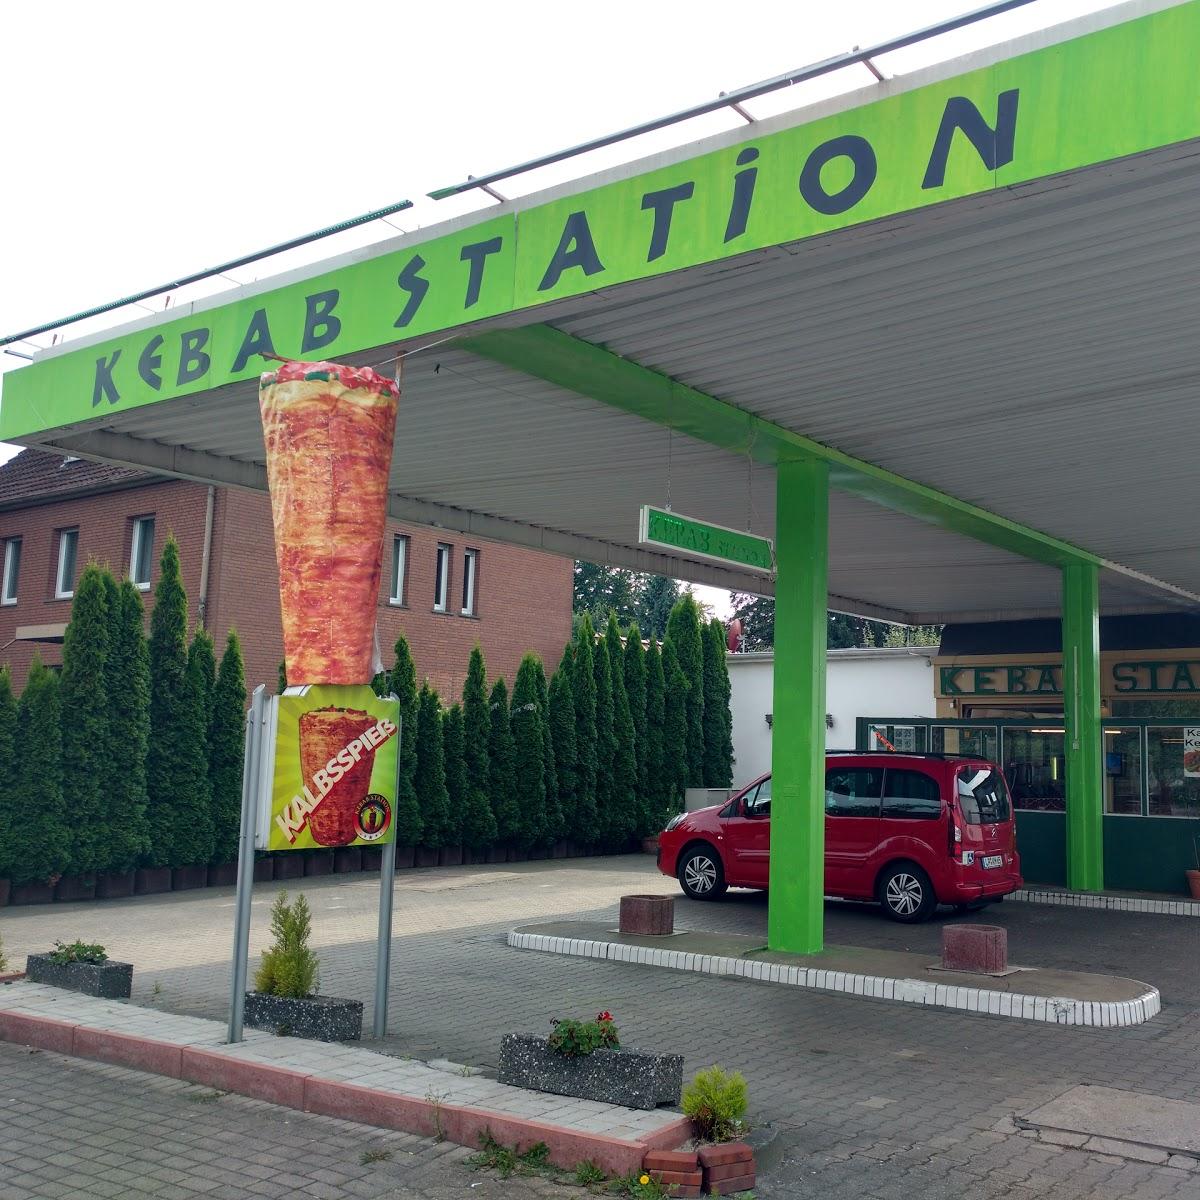 Restaurant "Kebab Station" in Lippstadt